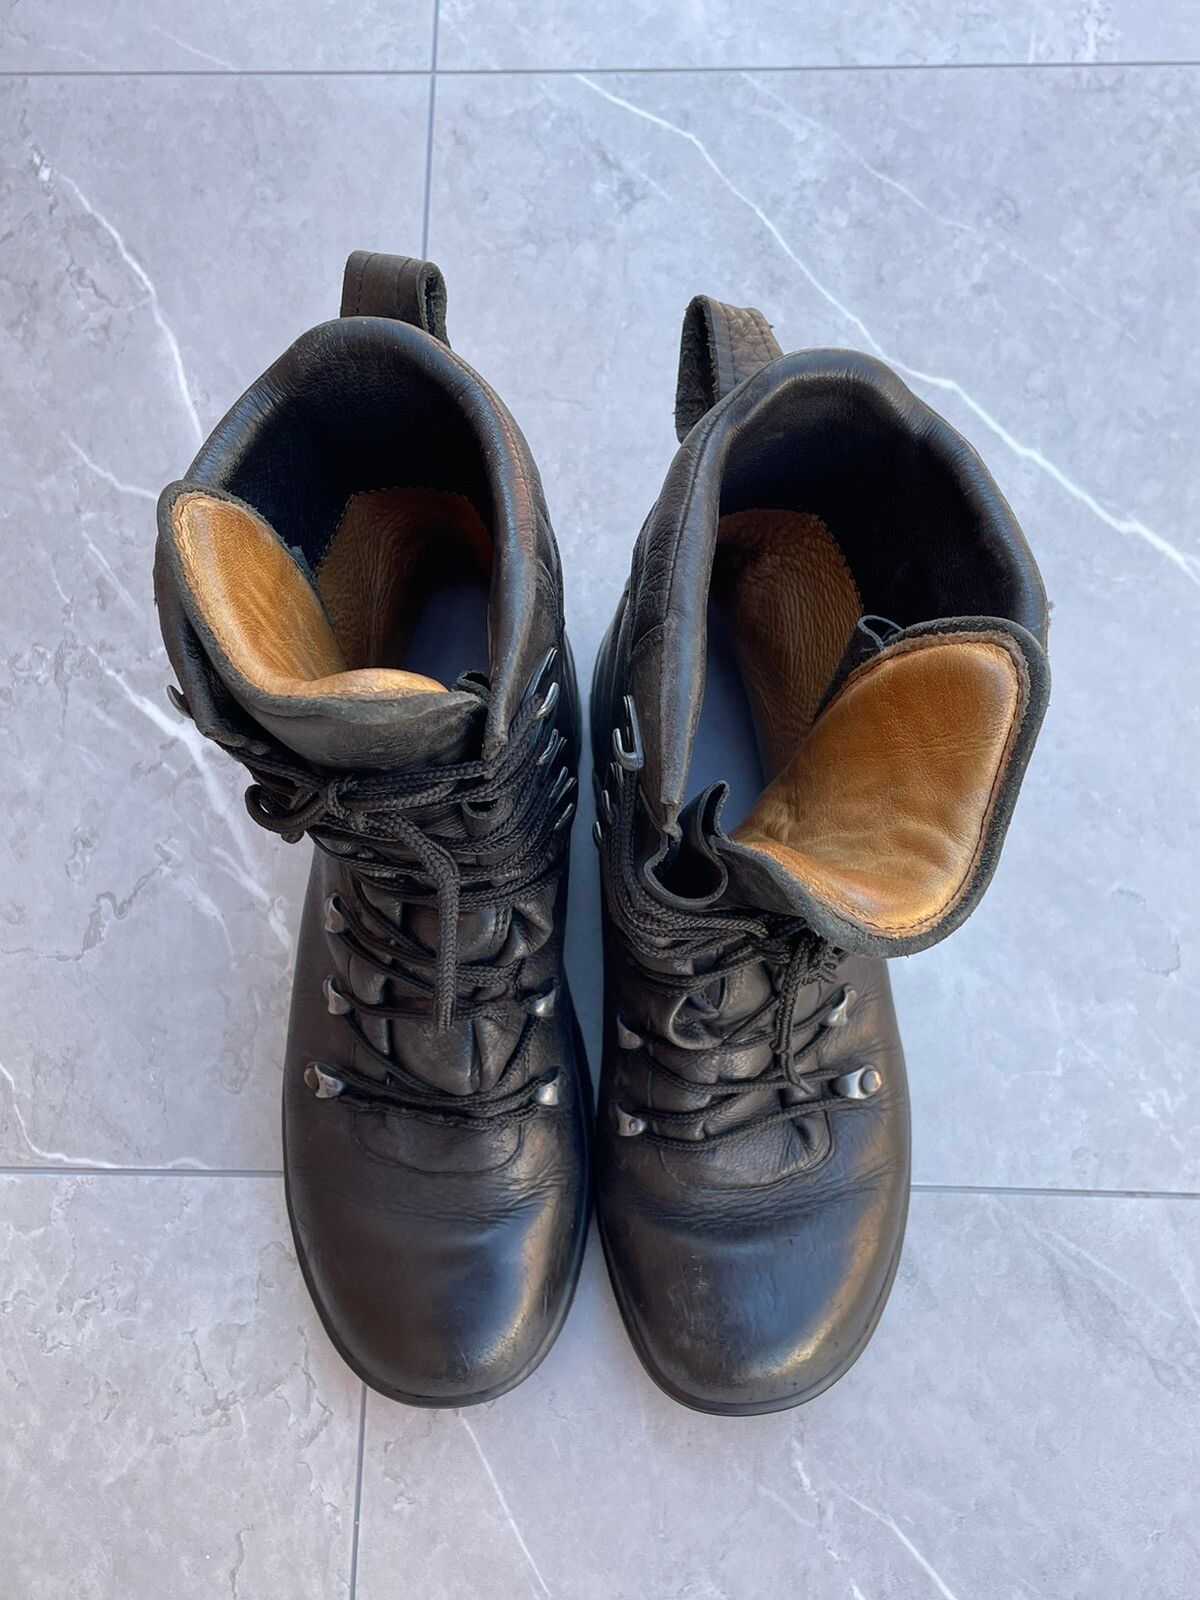 Vintage 1970s Vintage Military Black Leather Combat Boots Size US 9 / EU 42 - 3 Thumbnail